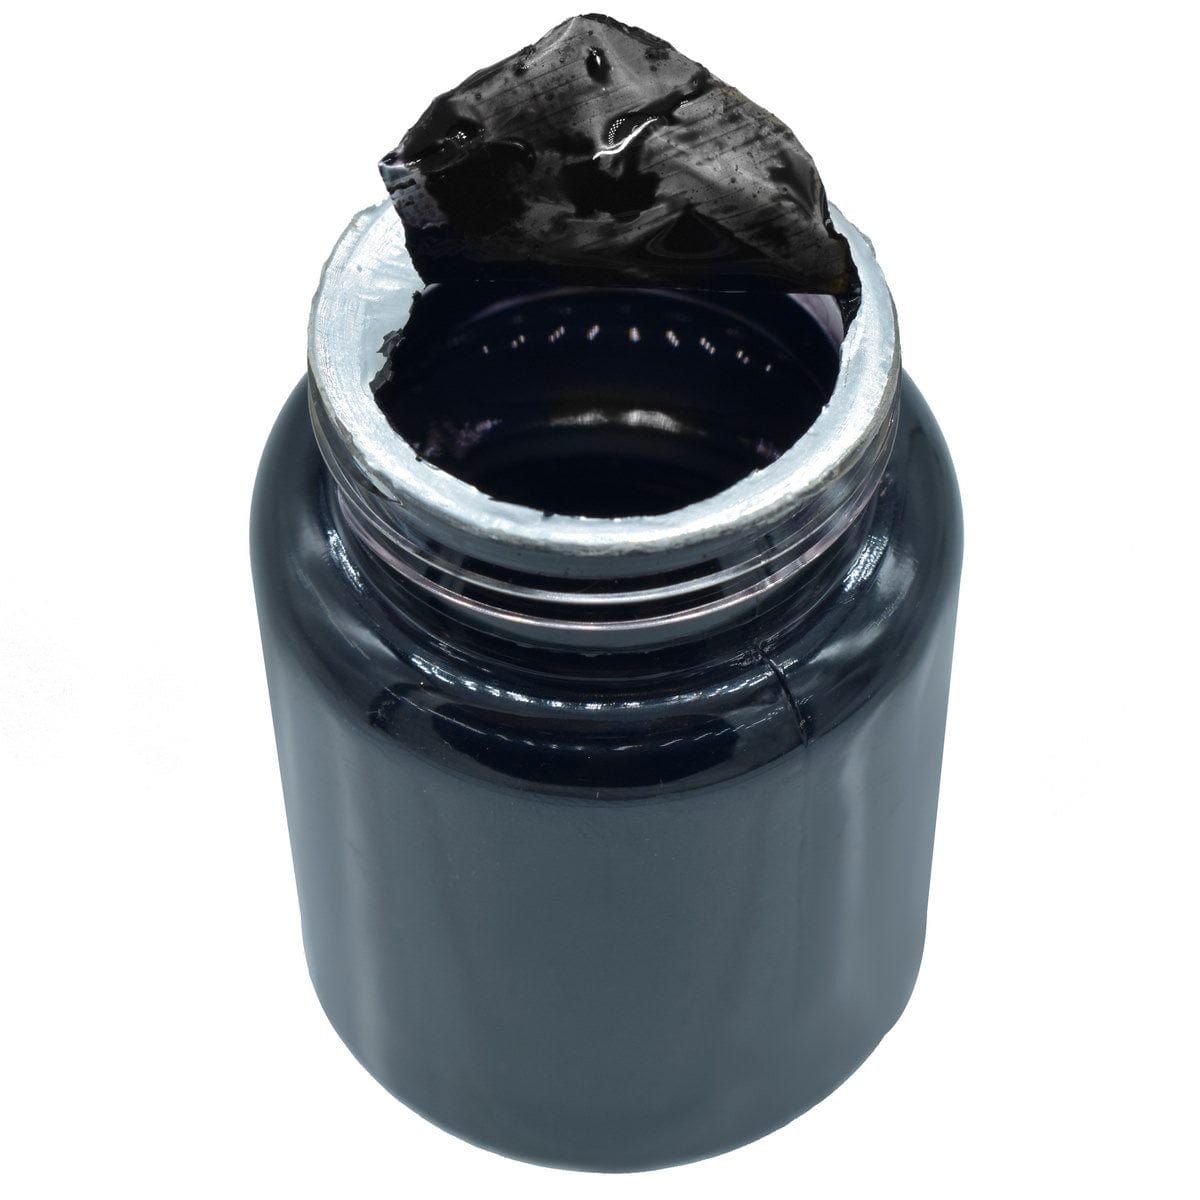 jags-mumbai Pen Fountain Pen Inks (40ML Black)